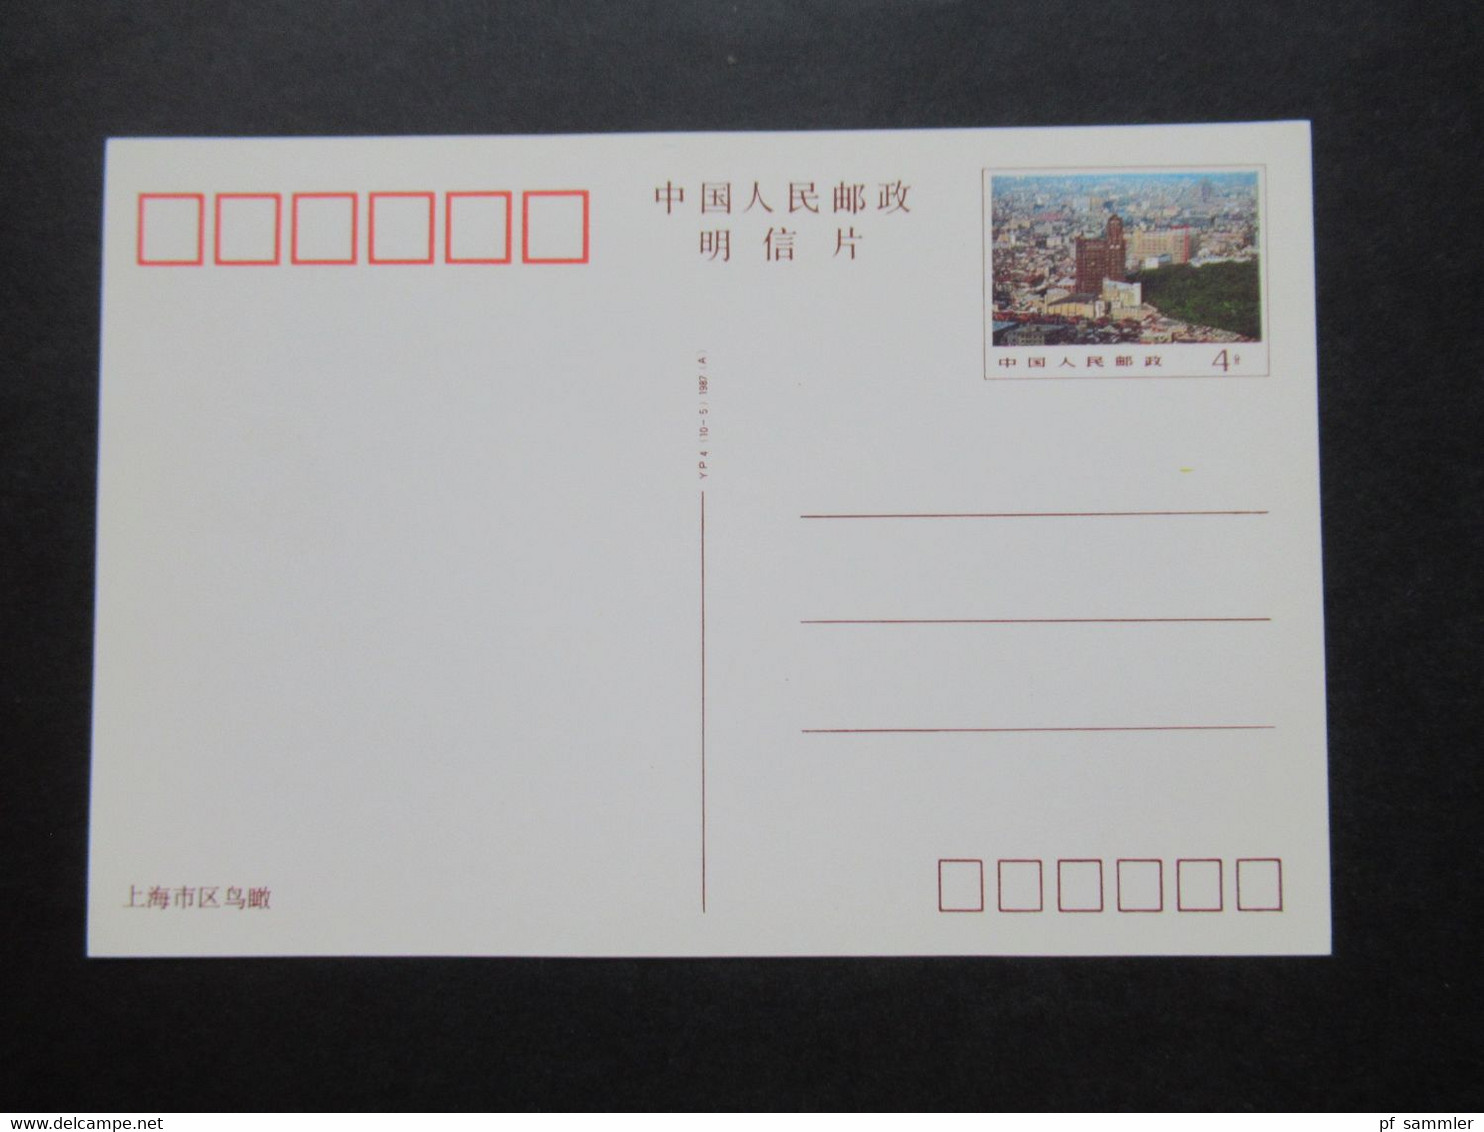 VR China 1987 Ganzsachen Shanghai Postcards mit 7 Ansichten / 7 Karten ungebraucht!